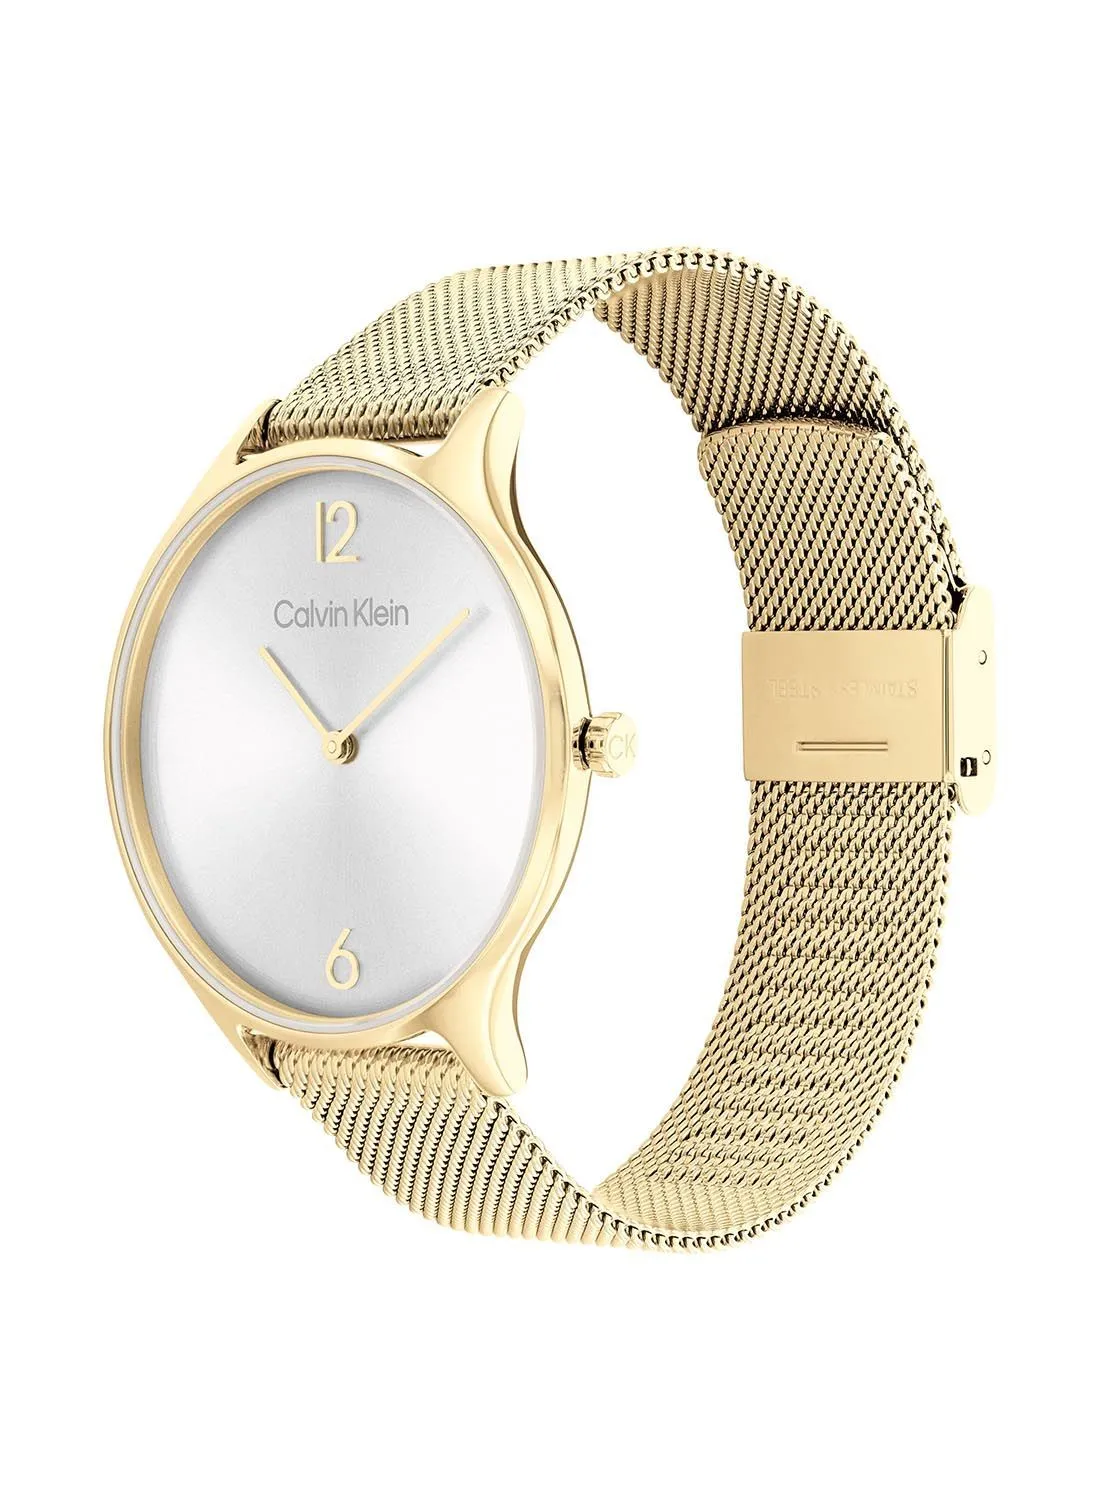 CALVIN KLEIN Analog Round Waterproof  Wrist Watch With Gold Strap 25200003